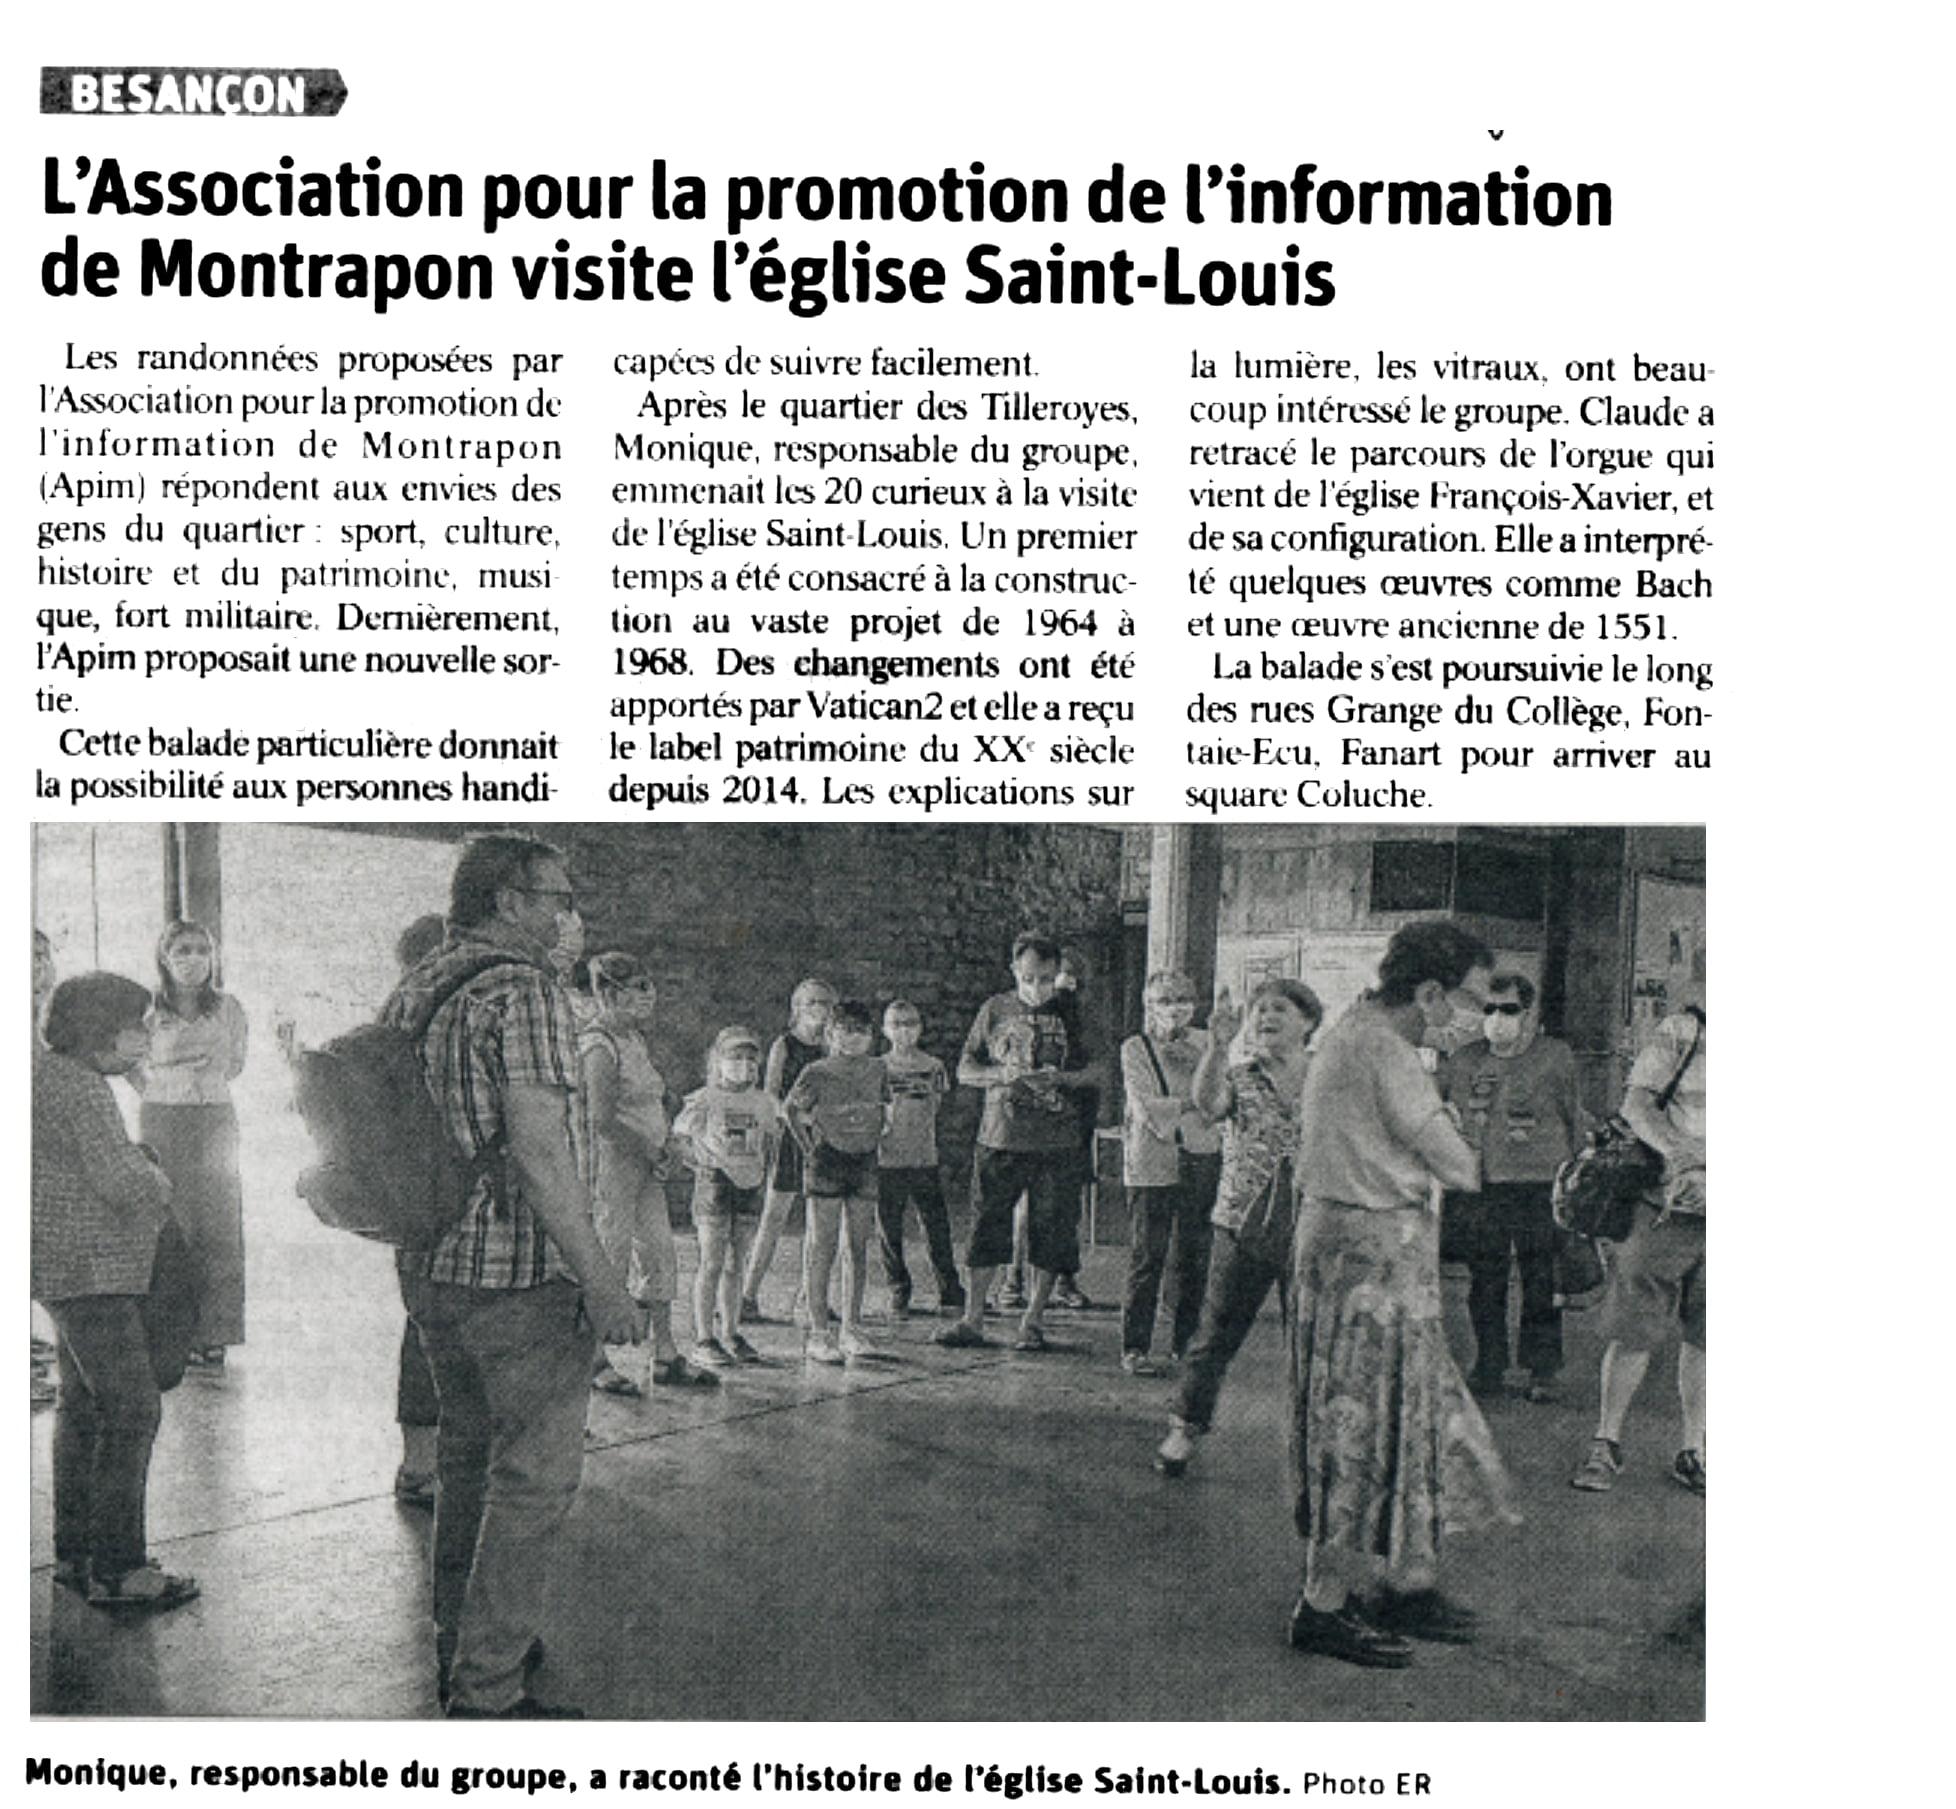 Est républicain - "l'Association pour la promotion de l'information de Montrapon visite l'église Saint-Louis" - 21 juillet 2021